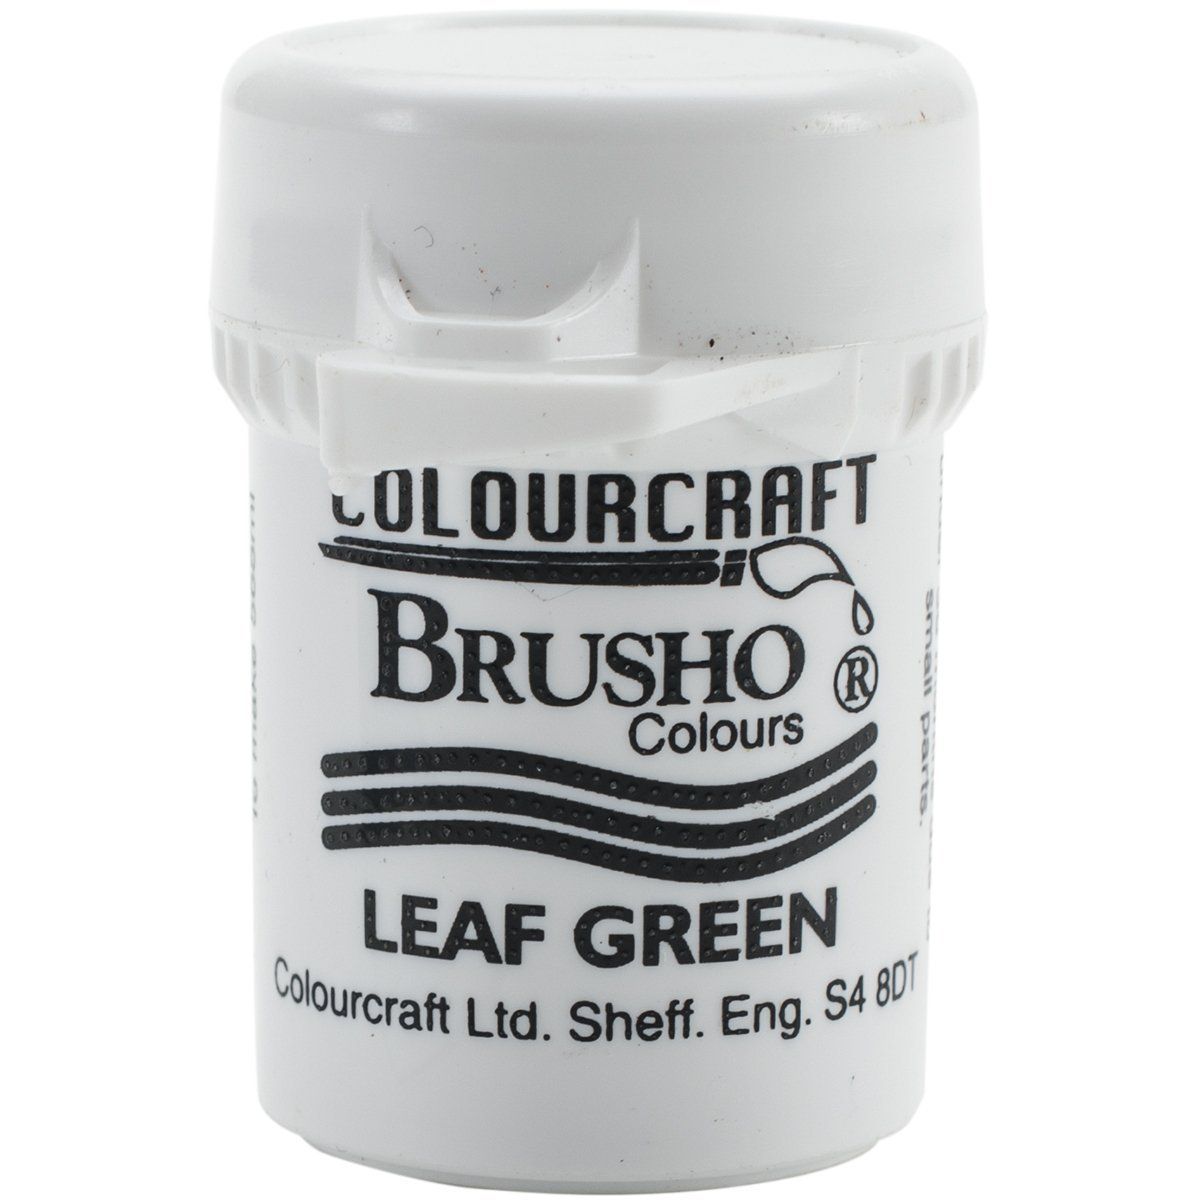 Brusho Crystal Colour - Leaf Green 15 gm